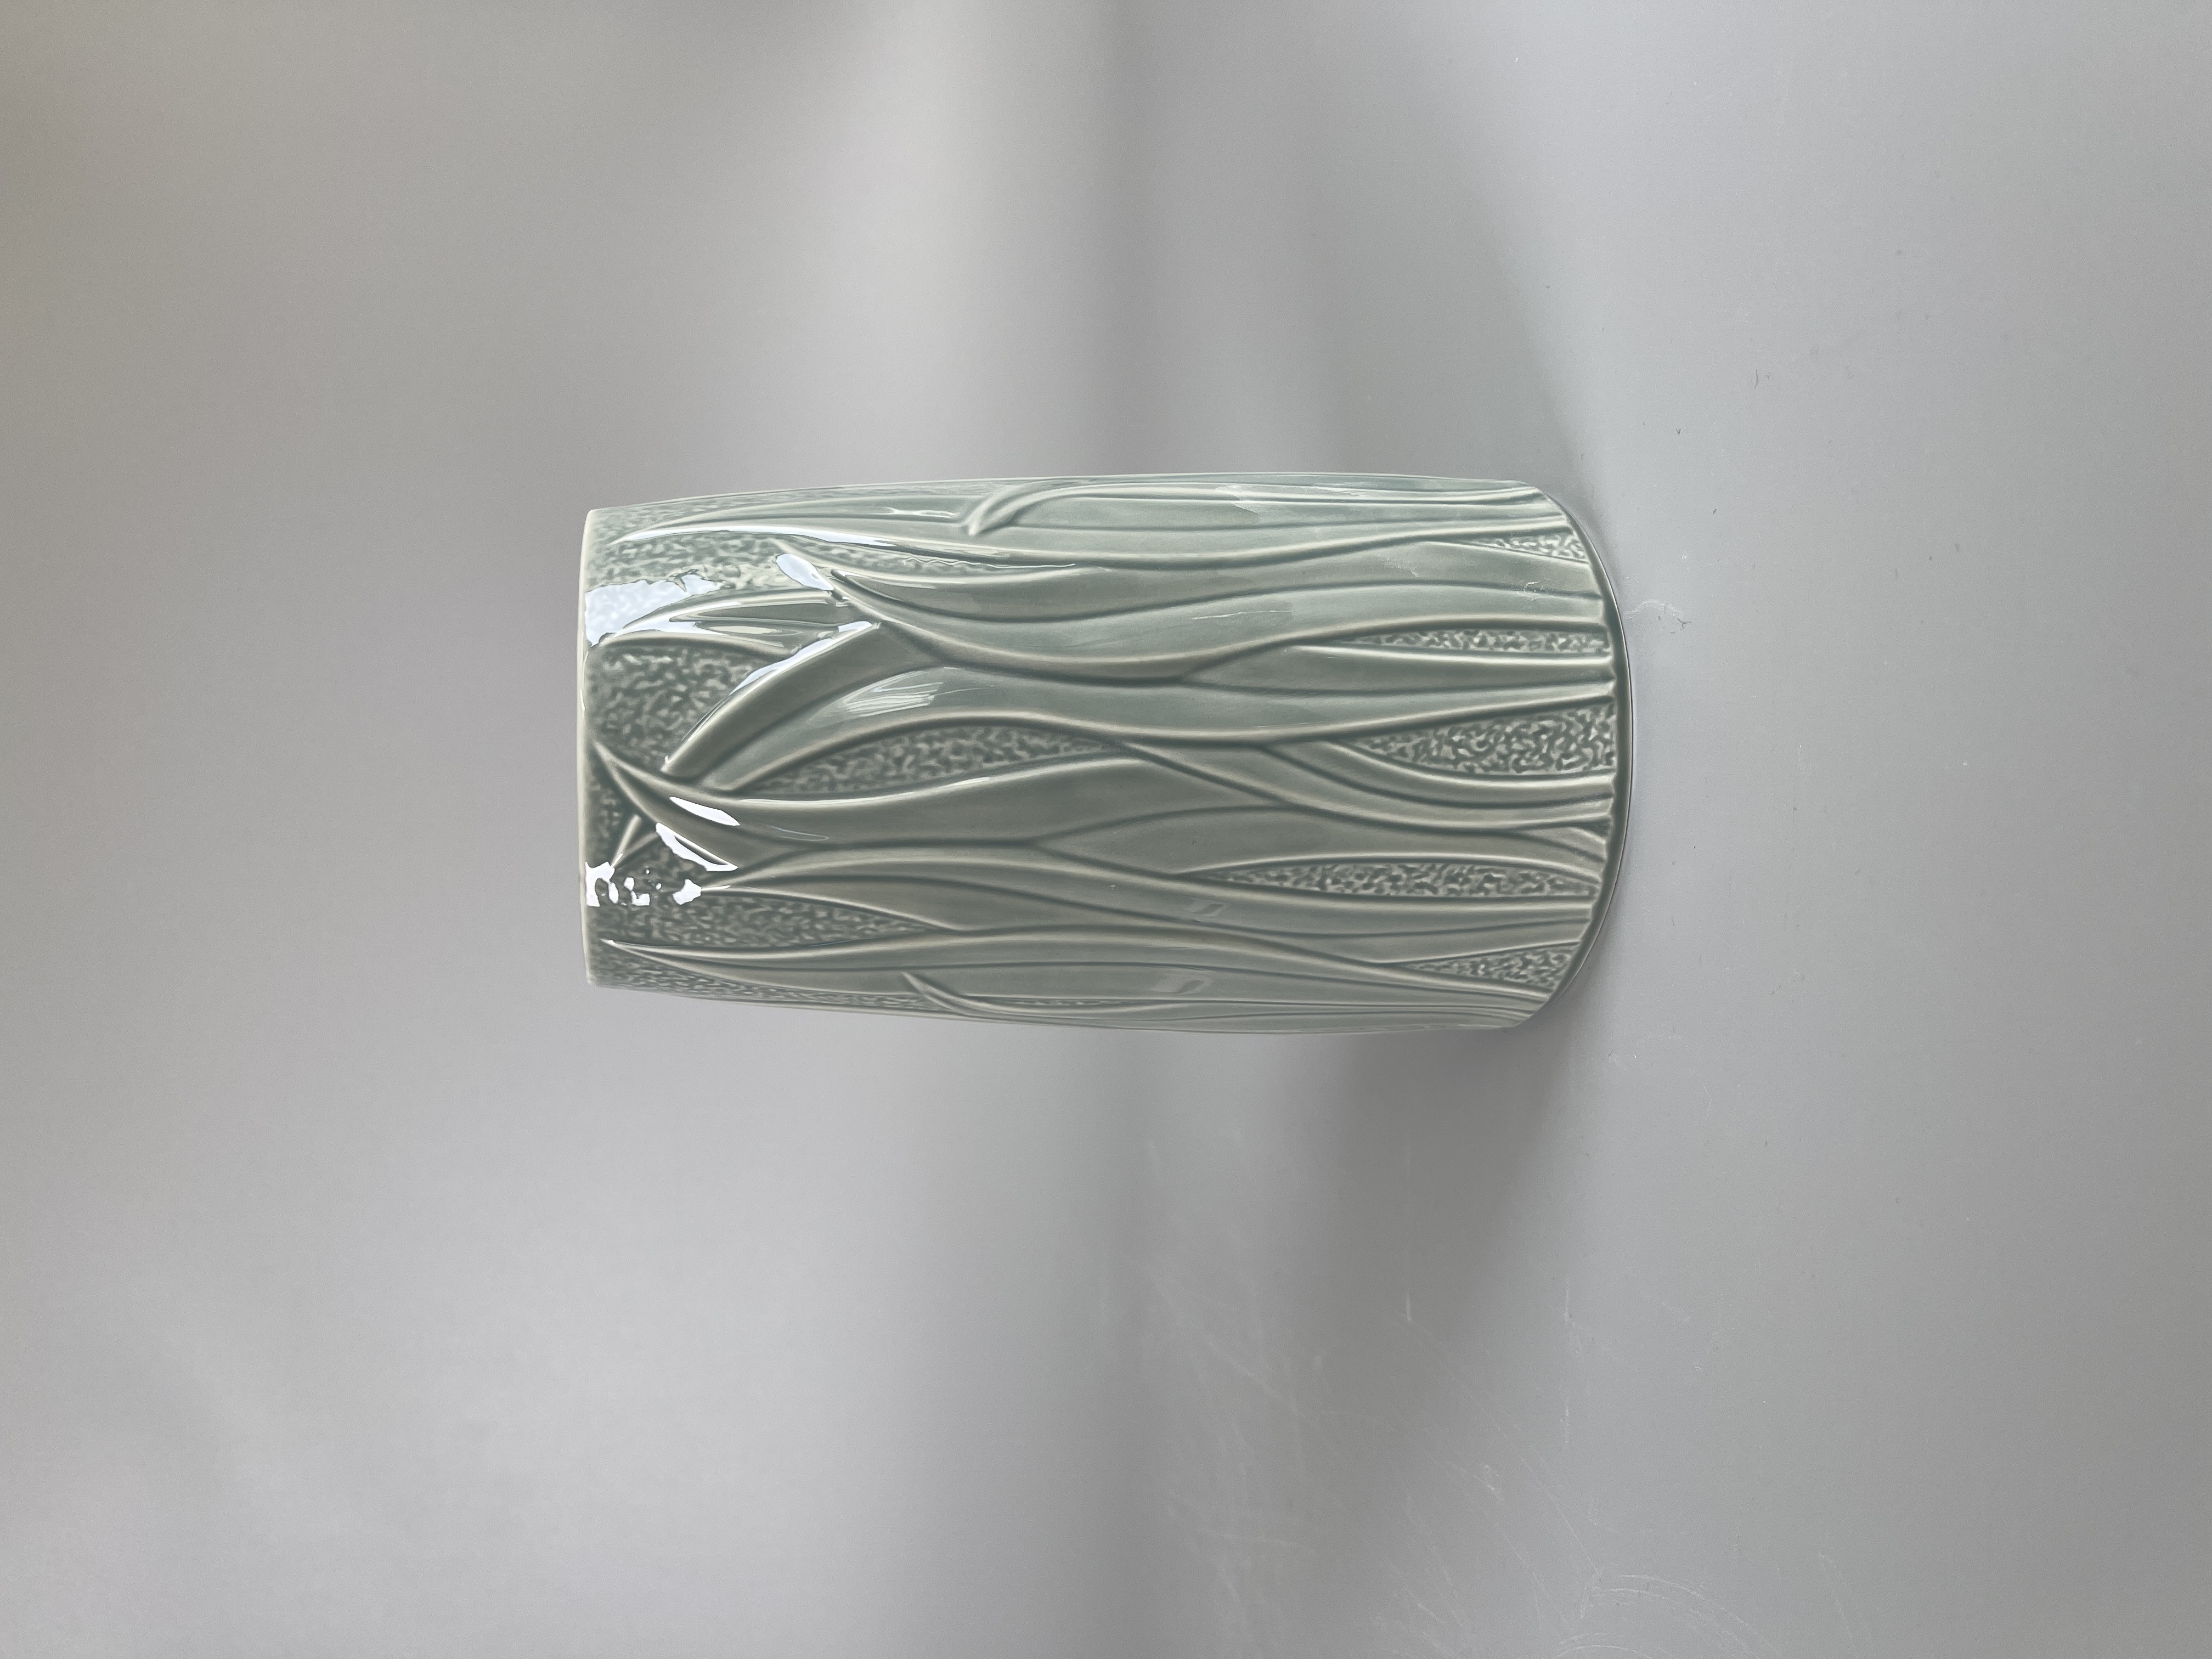 Grüne Vase Gramina von Königlich Tettau 19 cm